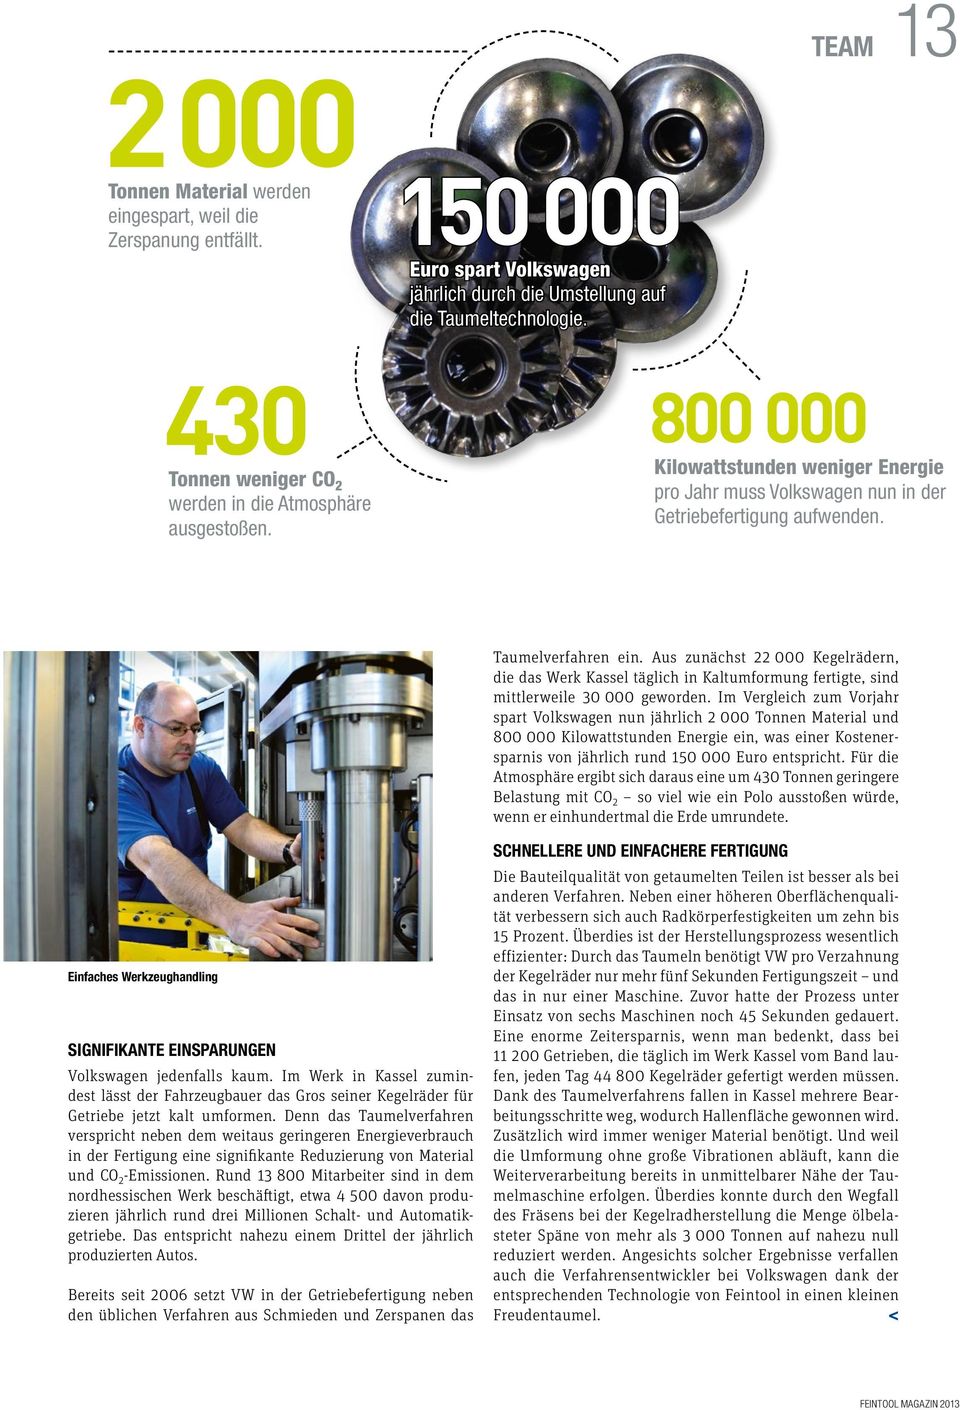 Taumelverfahren ein. Aus zunächst 22 000 Kegelrädern, die das Werk Kassel täglich in Kaltumformung fertigte, sind mittlerweile 30 000 geworden.